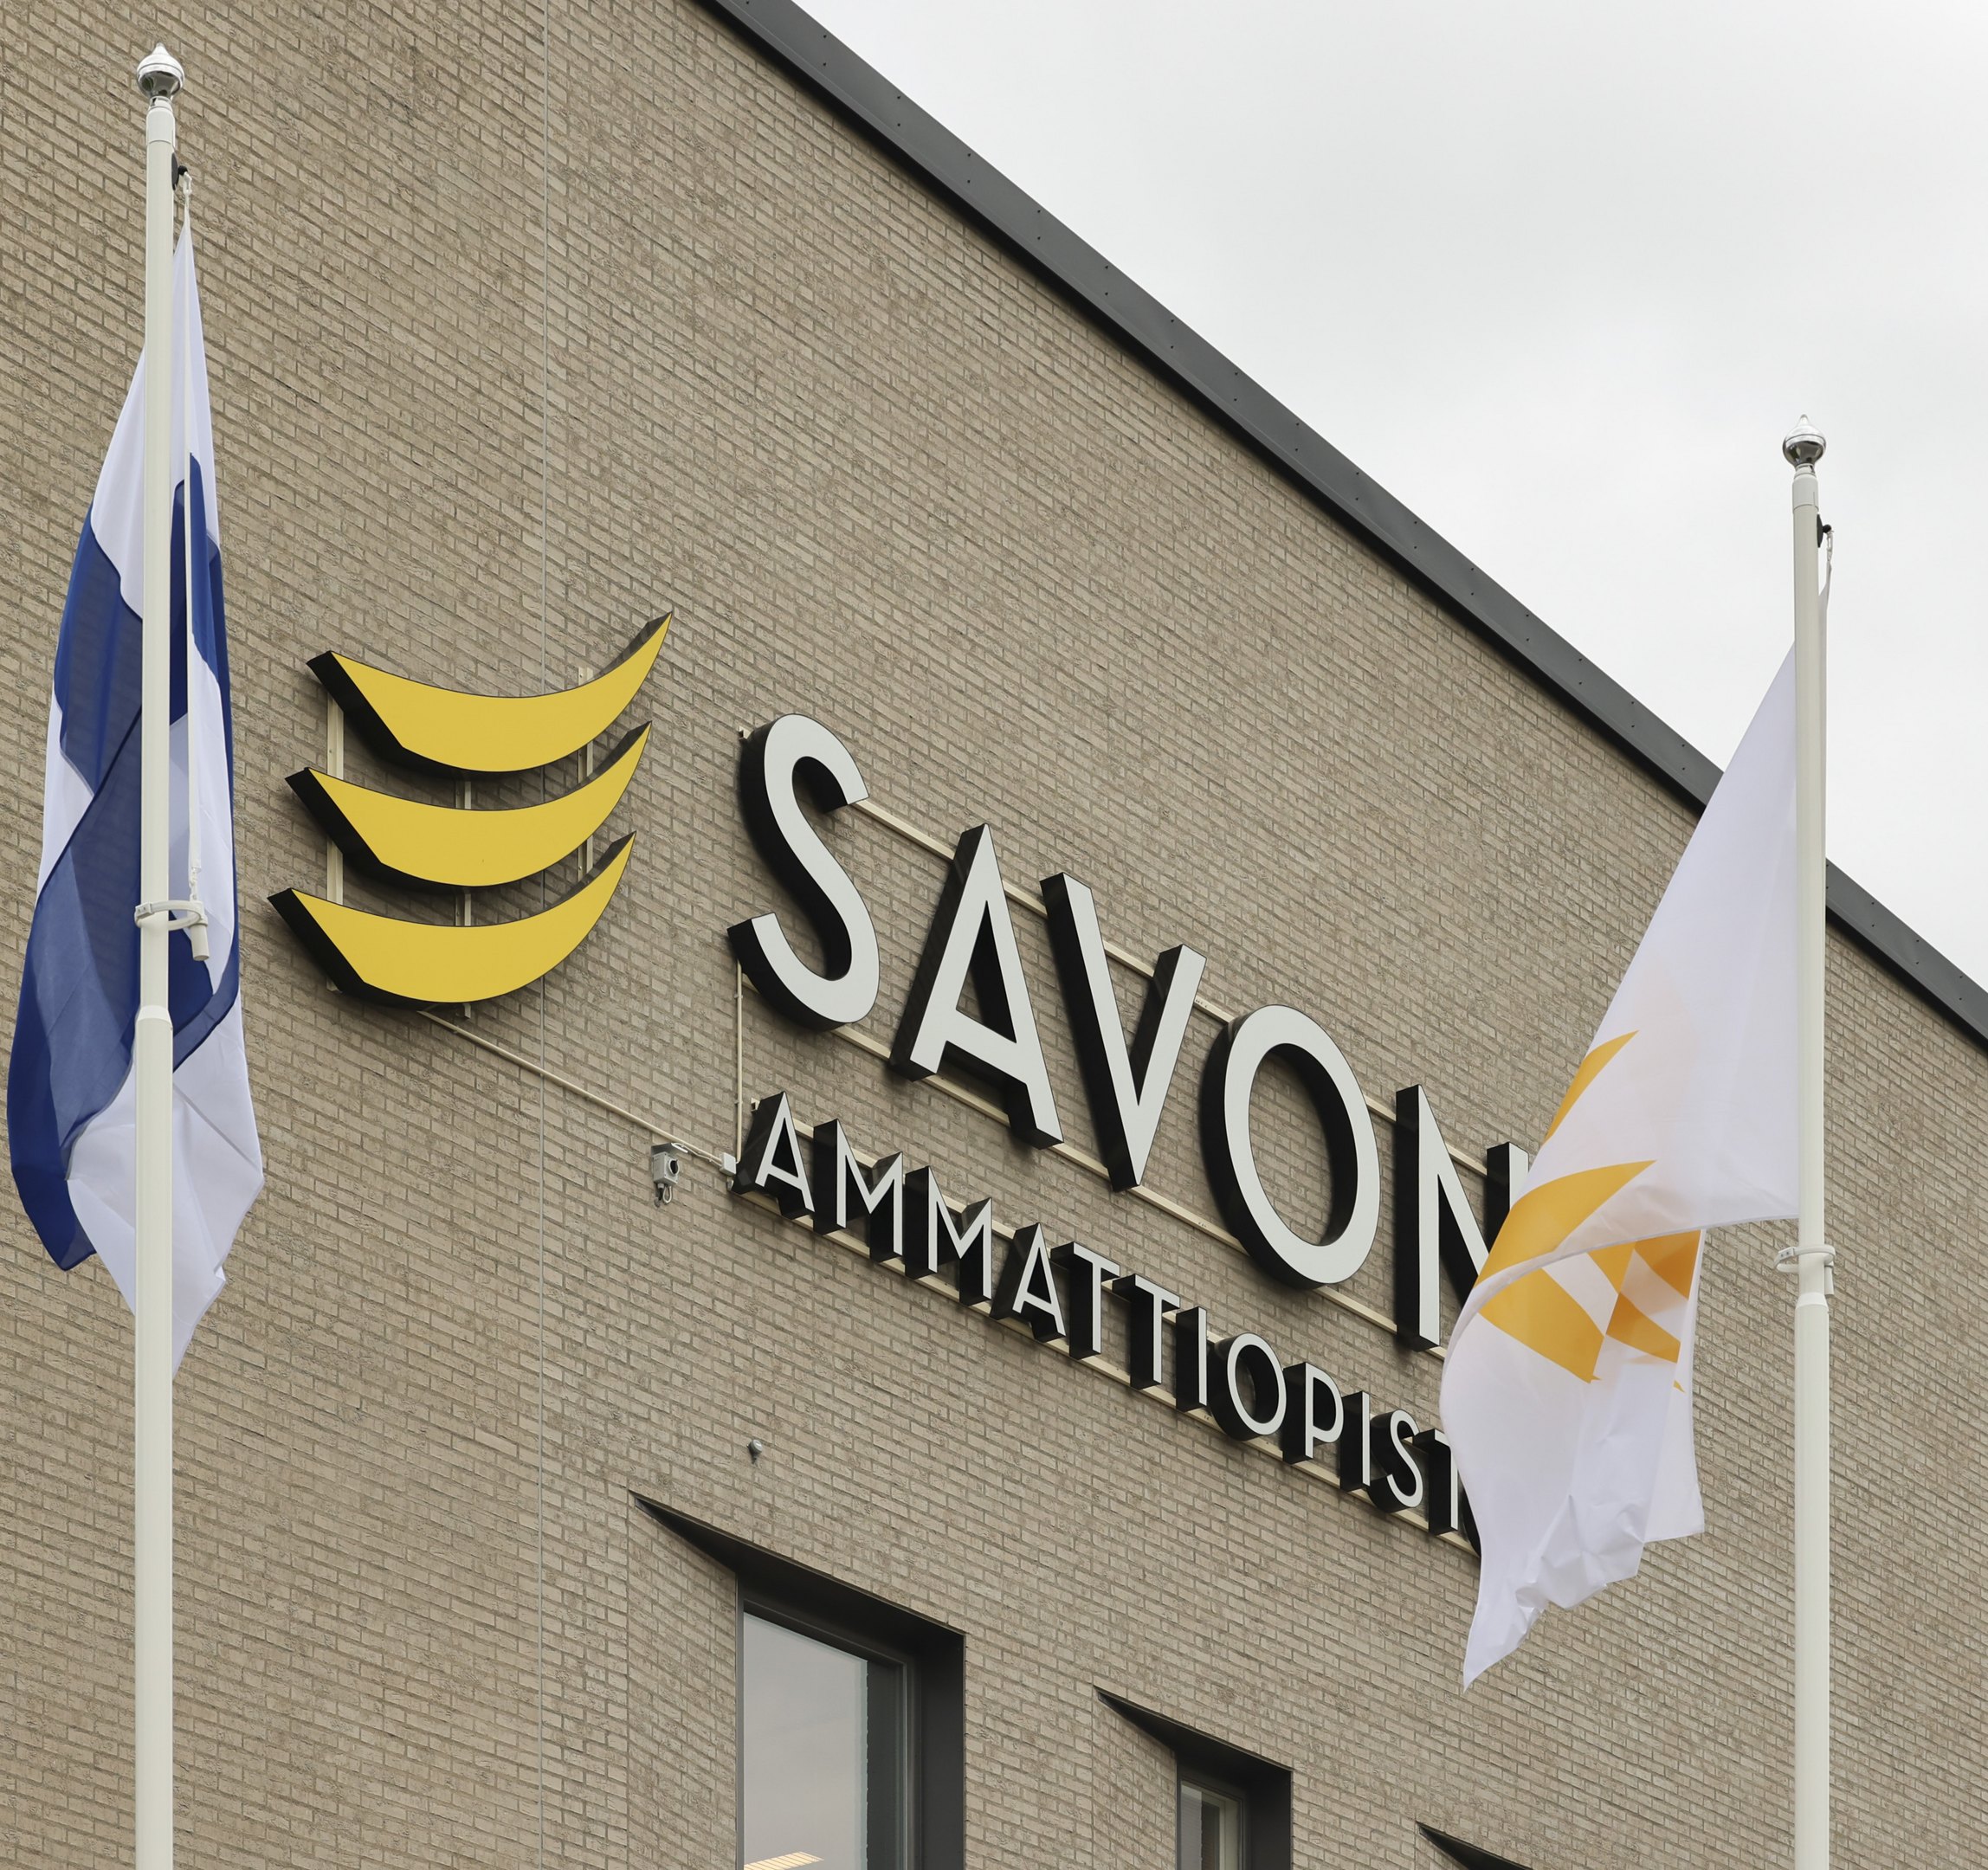 Savon ammattiopiston logo koulun seinässä ja ympärillä Suomen lippu ja Sakkyn lippu.